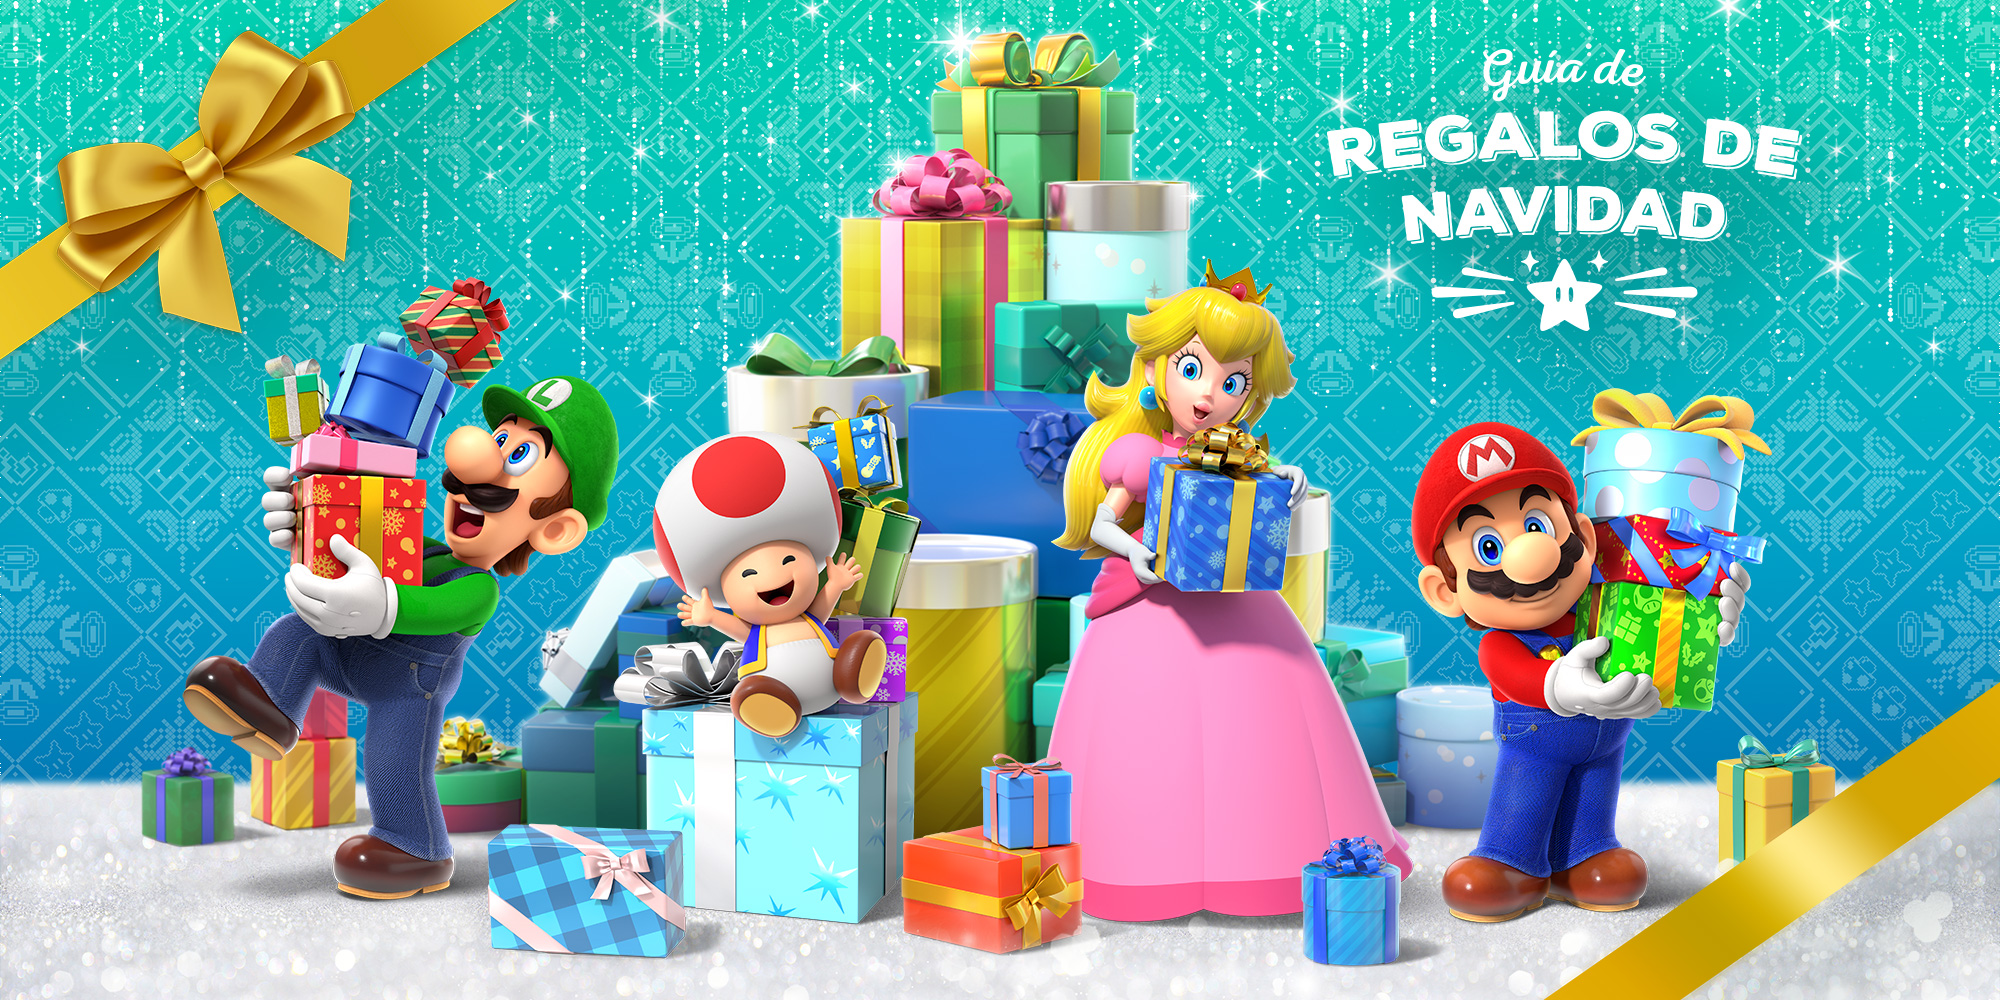 Guía de regalos de Navidad | Nintendo